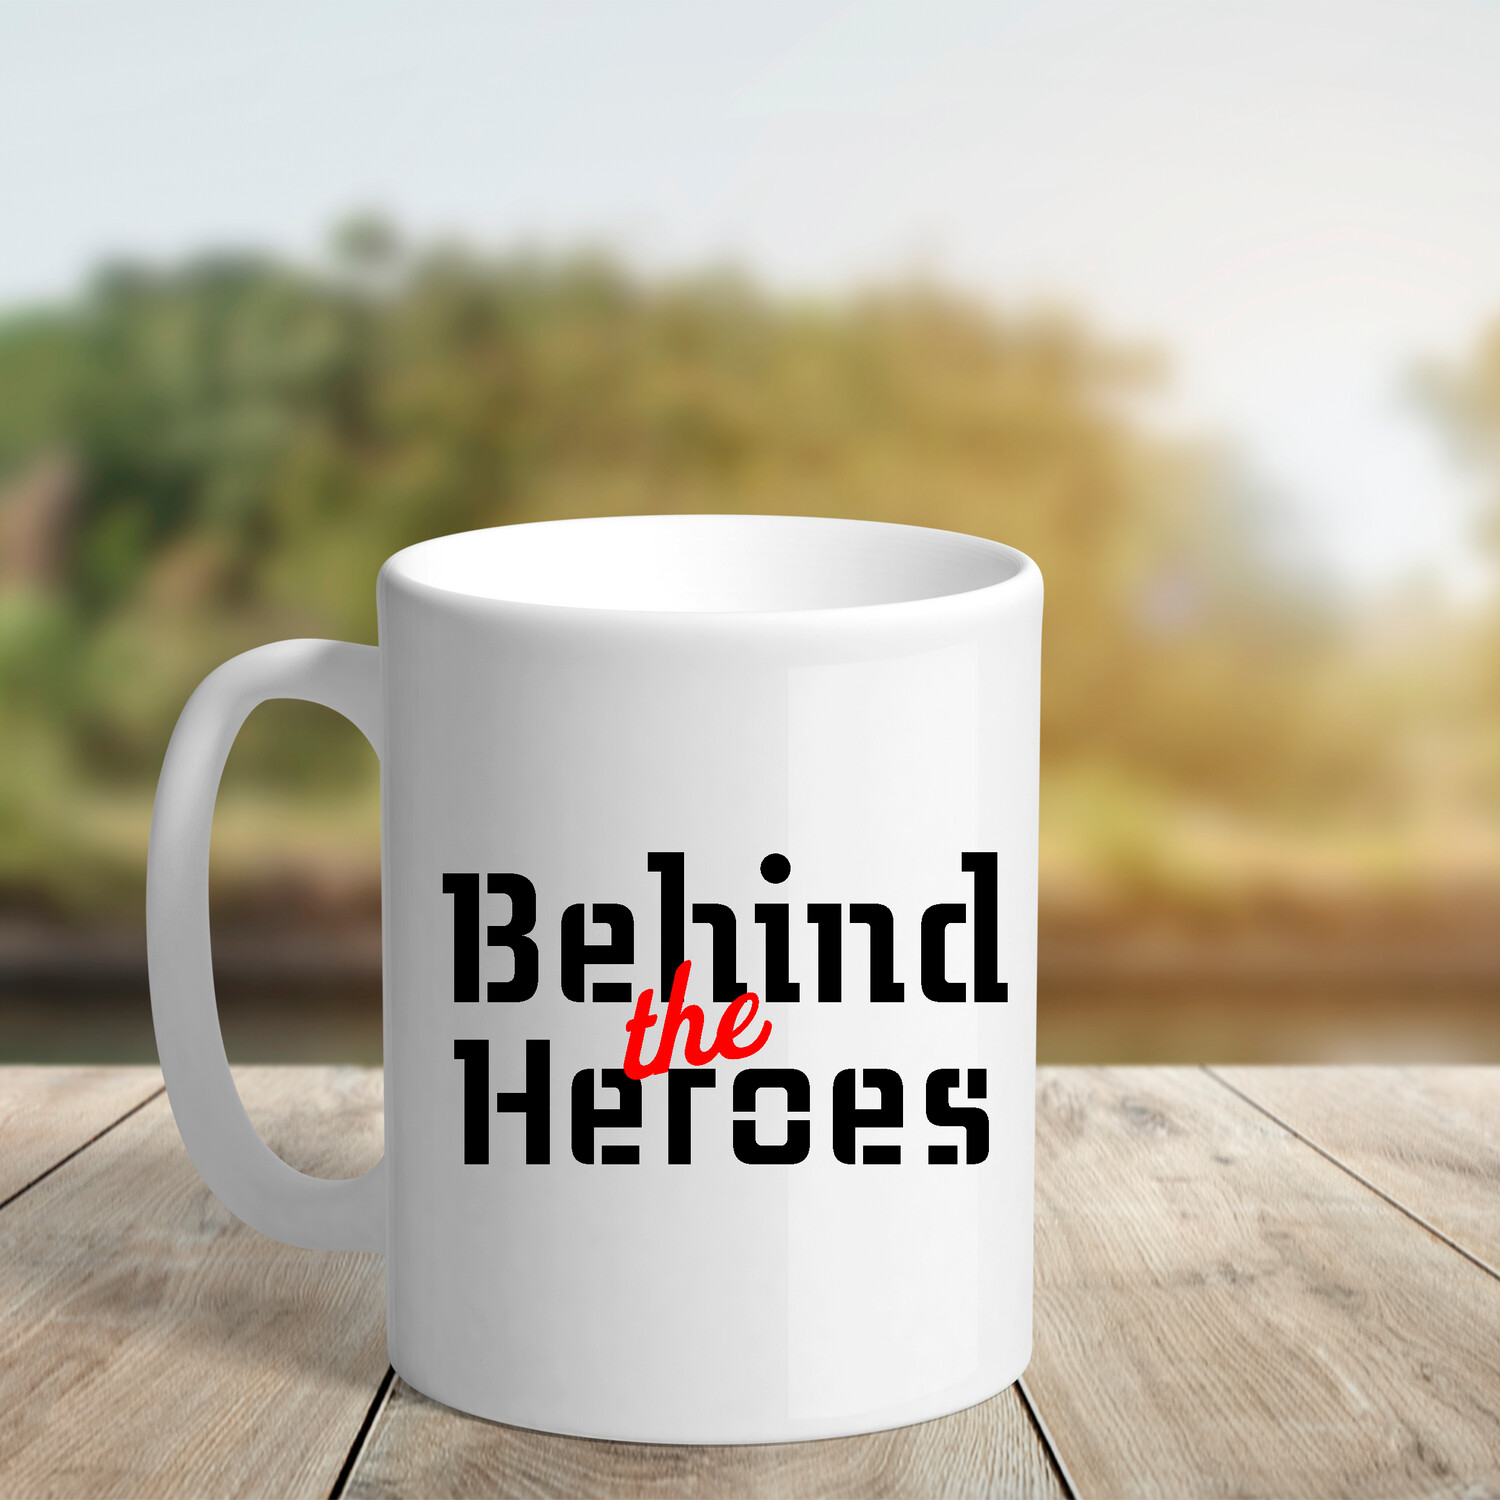 Behind the Heroes 11oz mug